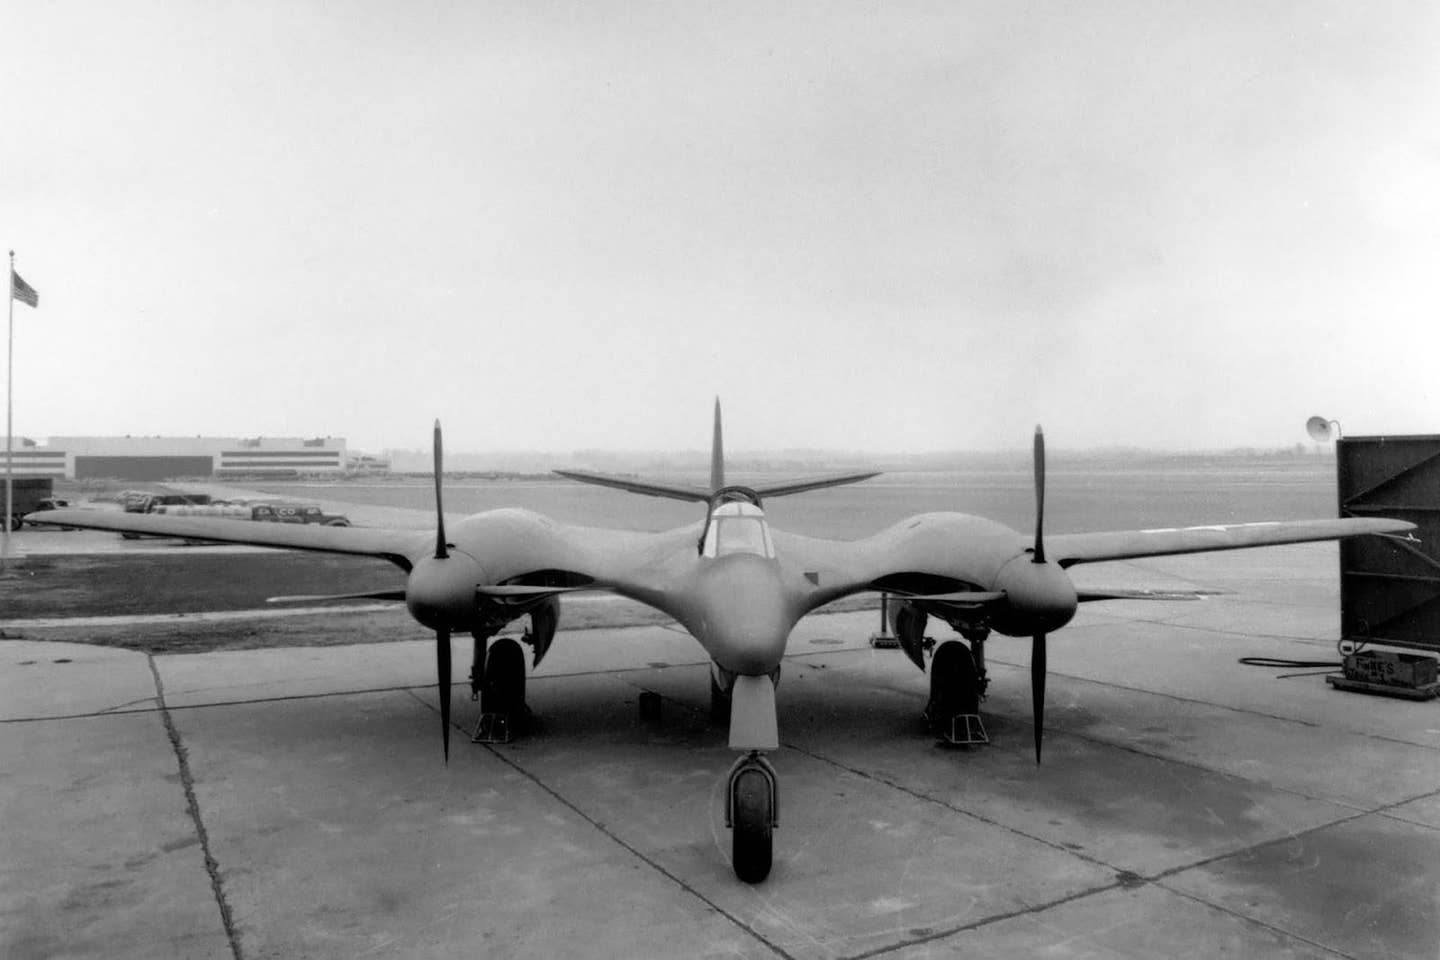 U.S. Air Force Moonbat XP-67